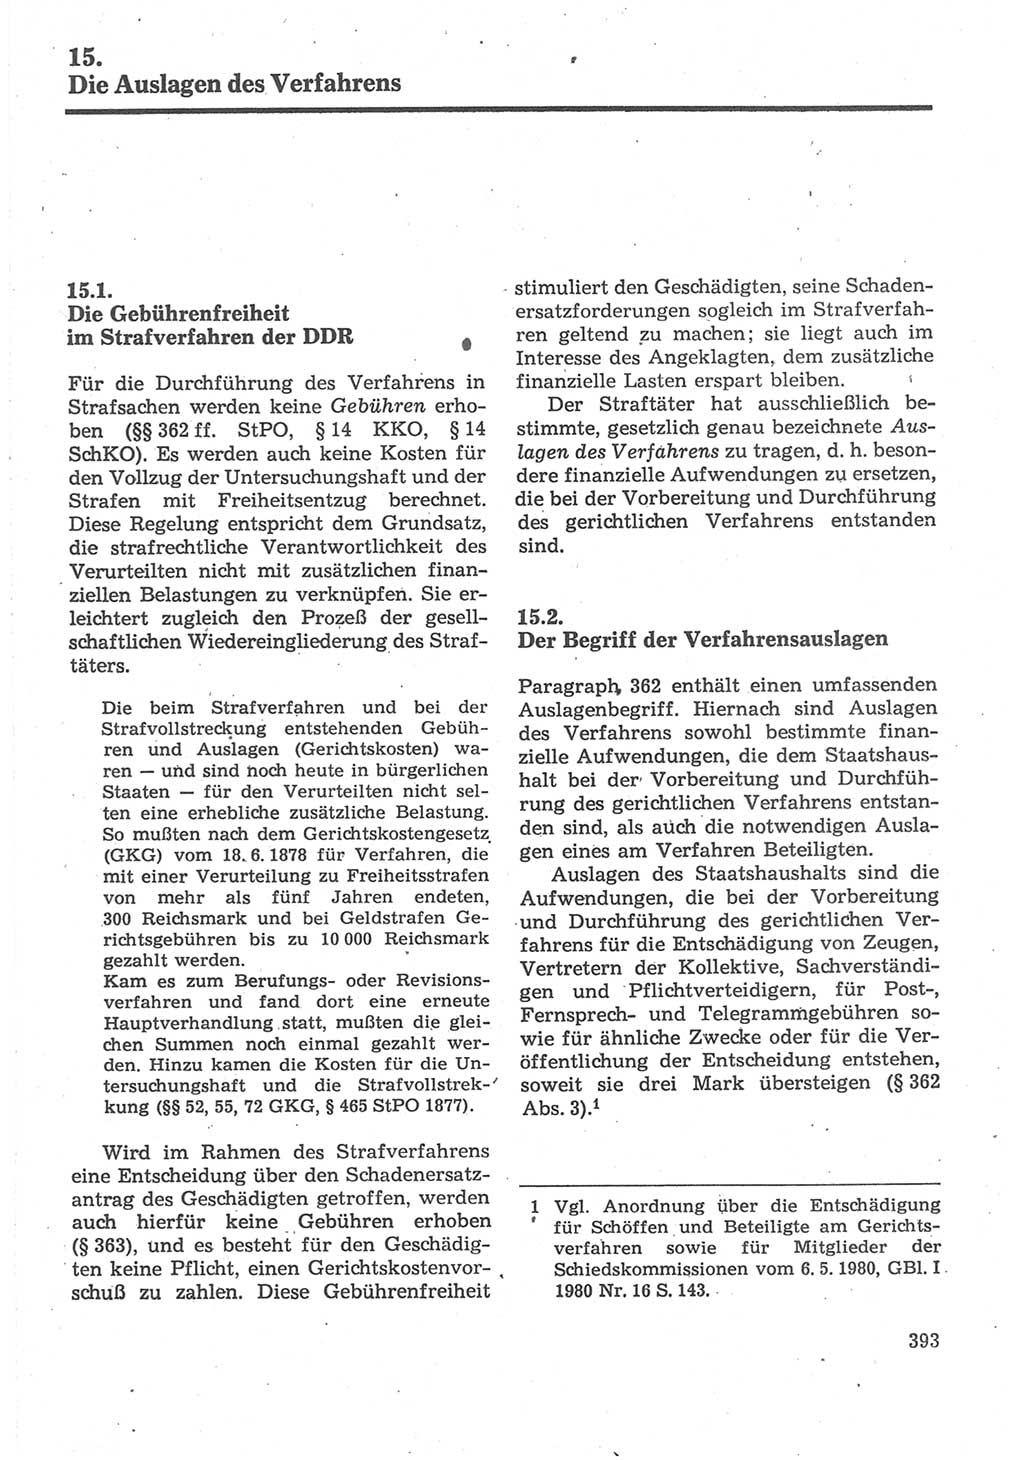 Strafverfahrensrecht [Deutsche Demokratische Republik (DDR)], Lehrbuch 1987, Seite 393 (Strafverf.-R. DDR Lb. 1987, S. 393)